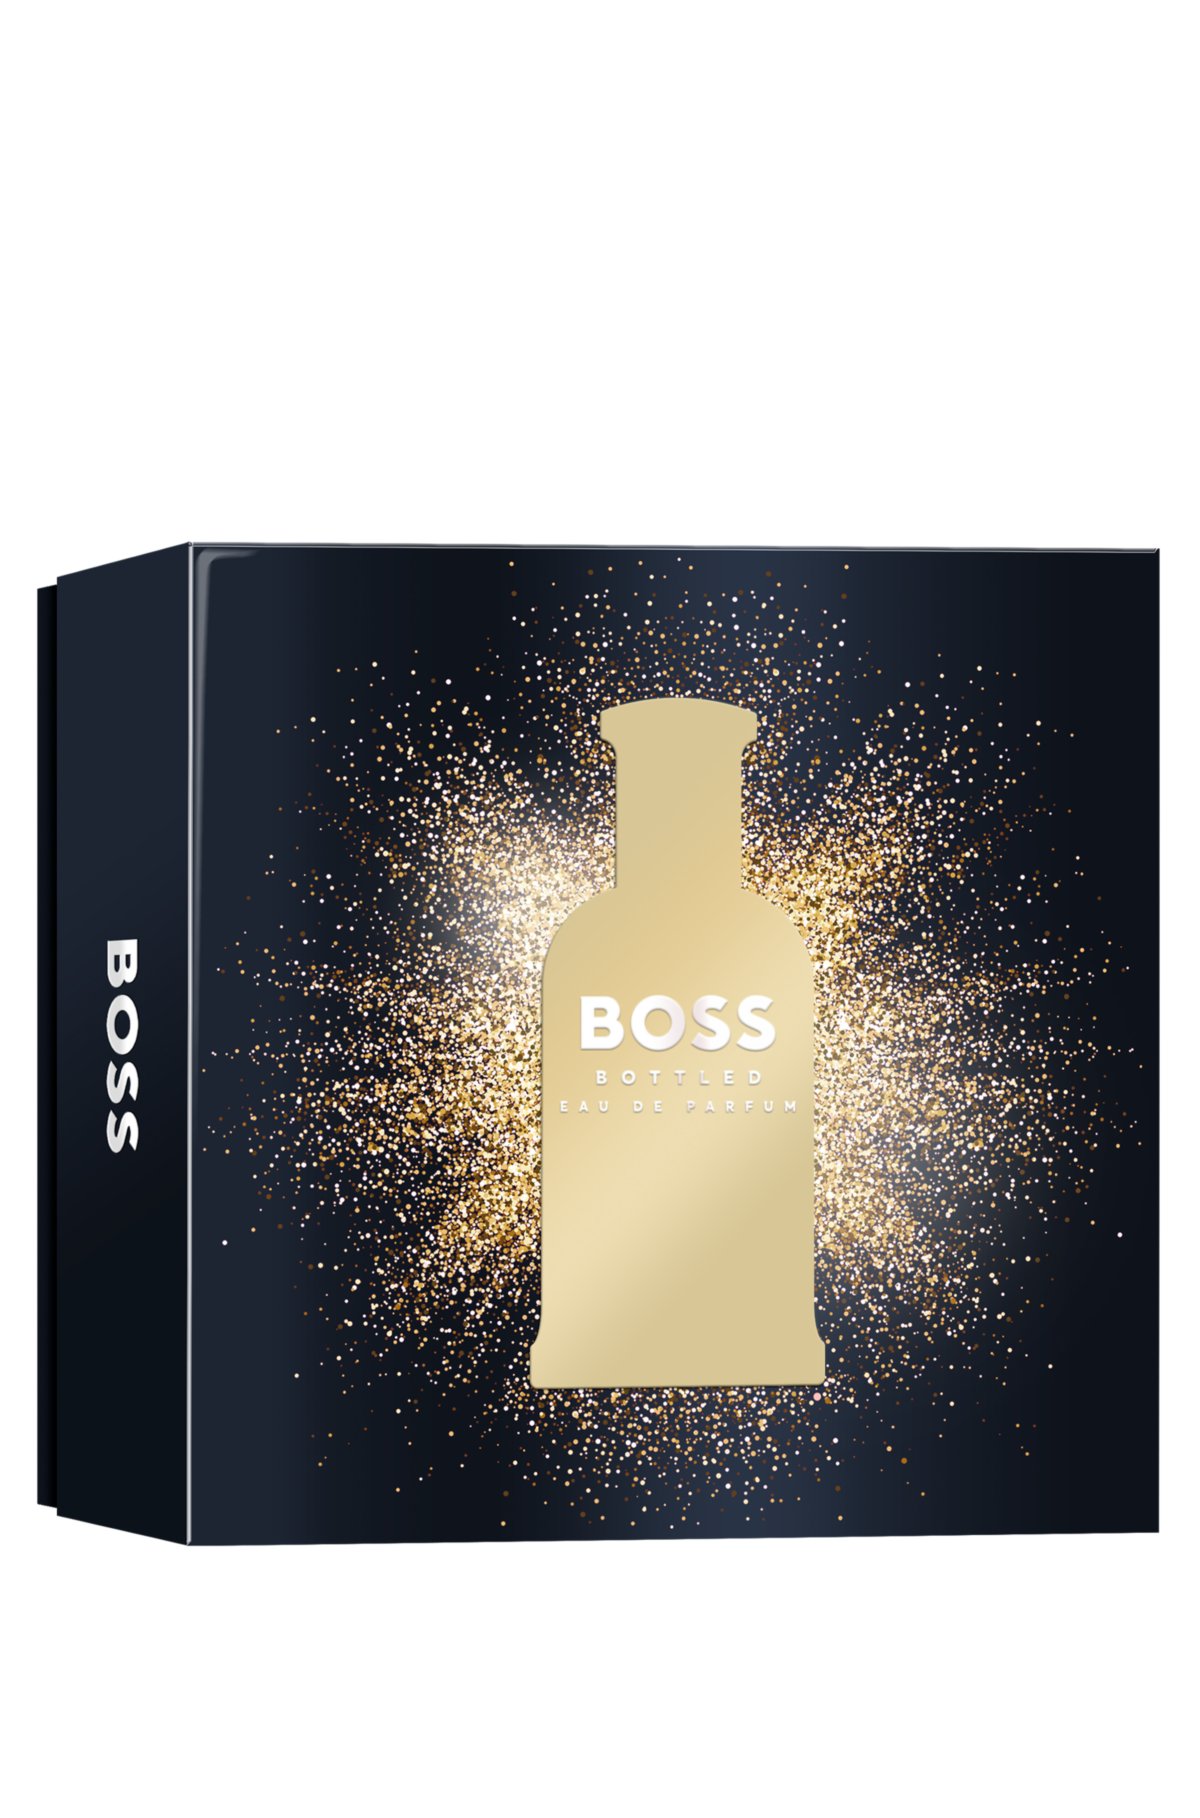 BOSS Bottled eau de parfum gift set, Assorted-Pre-Pack